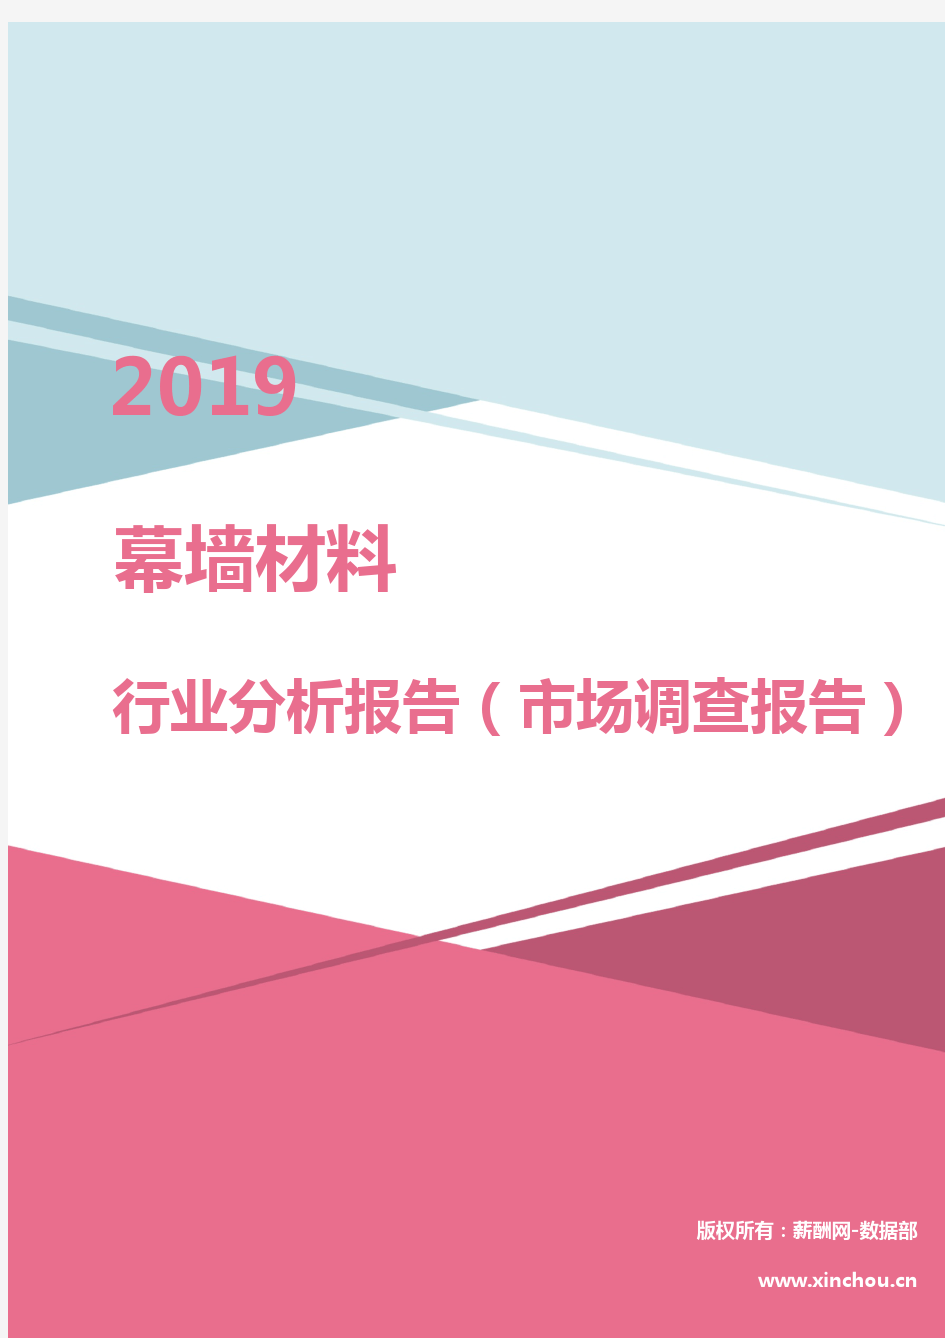 2019年幕墙材料行业分析报告(市场调查报告)